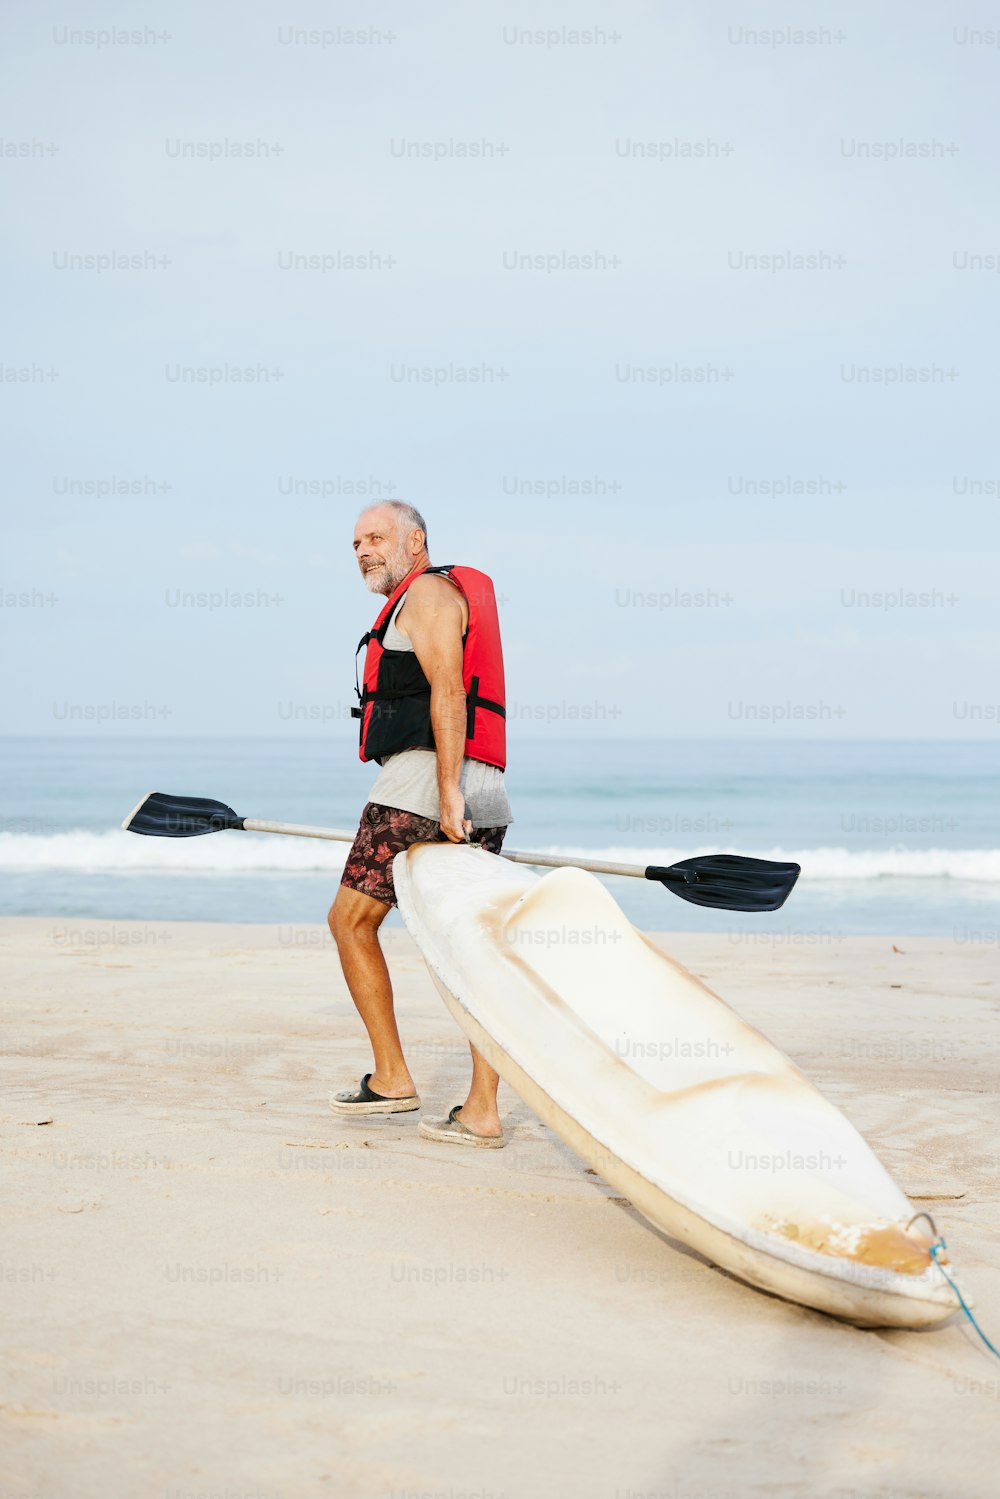 Un hombre caminando por la playa con un kayak